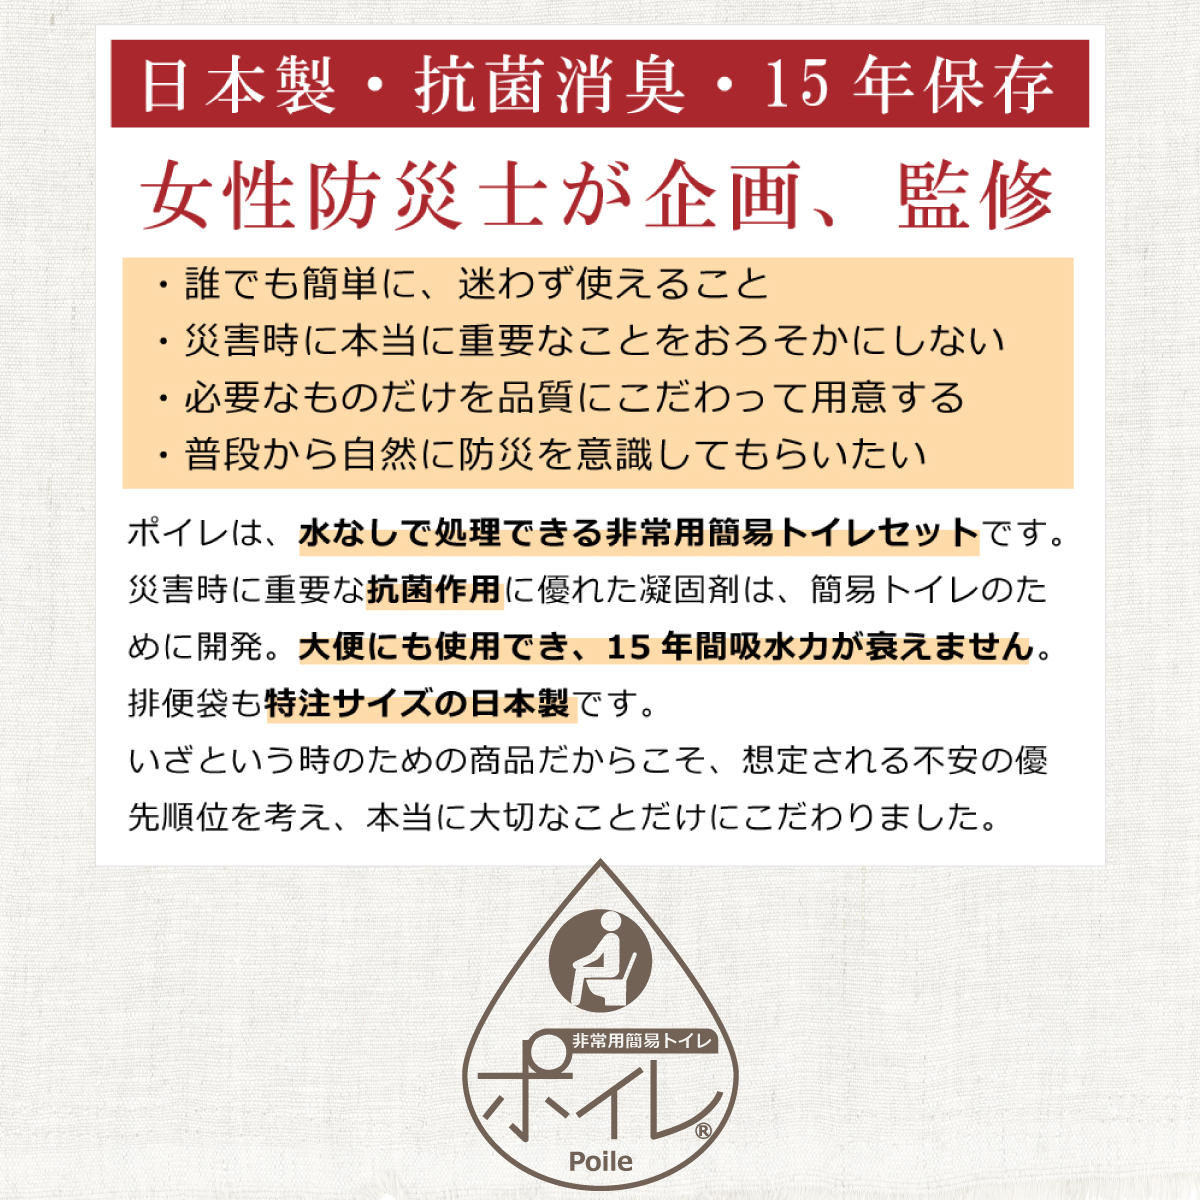 水がなくても使用できる日本製の簡易トイレ、水分を凝固剤で吸収し、可燃処理できる災害時のための防災用品です